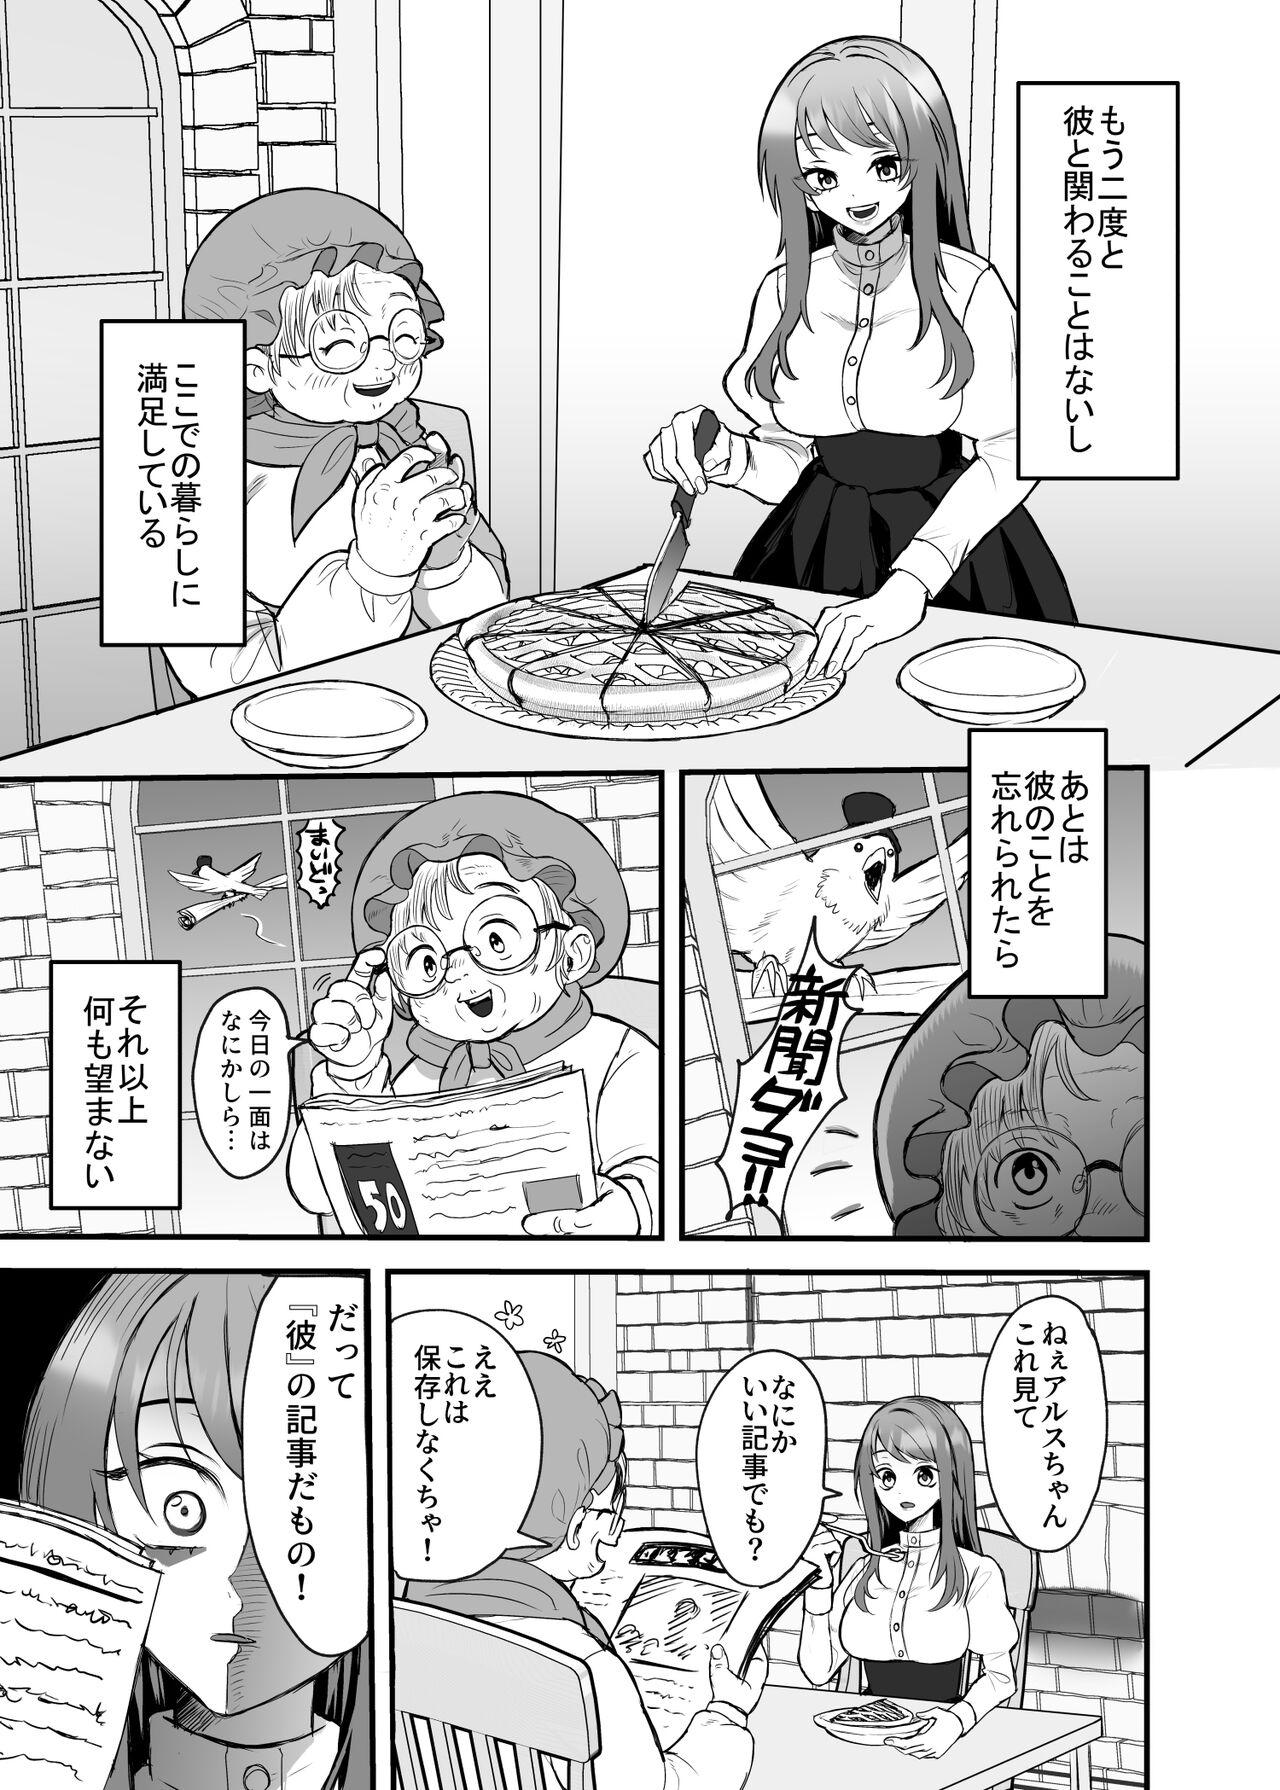 Adult Toys Eiyuu no Ura no Kao - Original Furry - Page 6